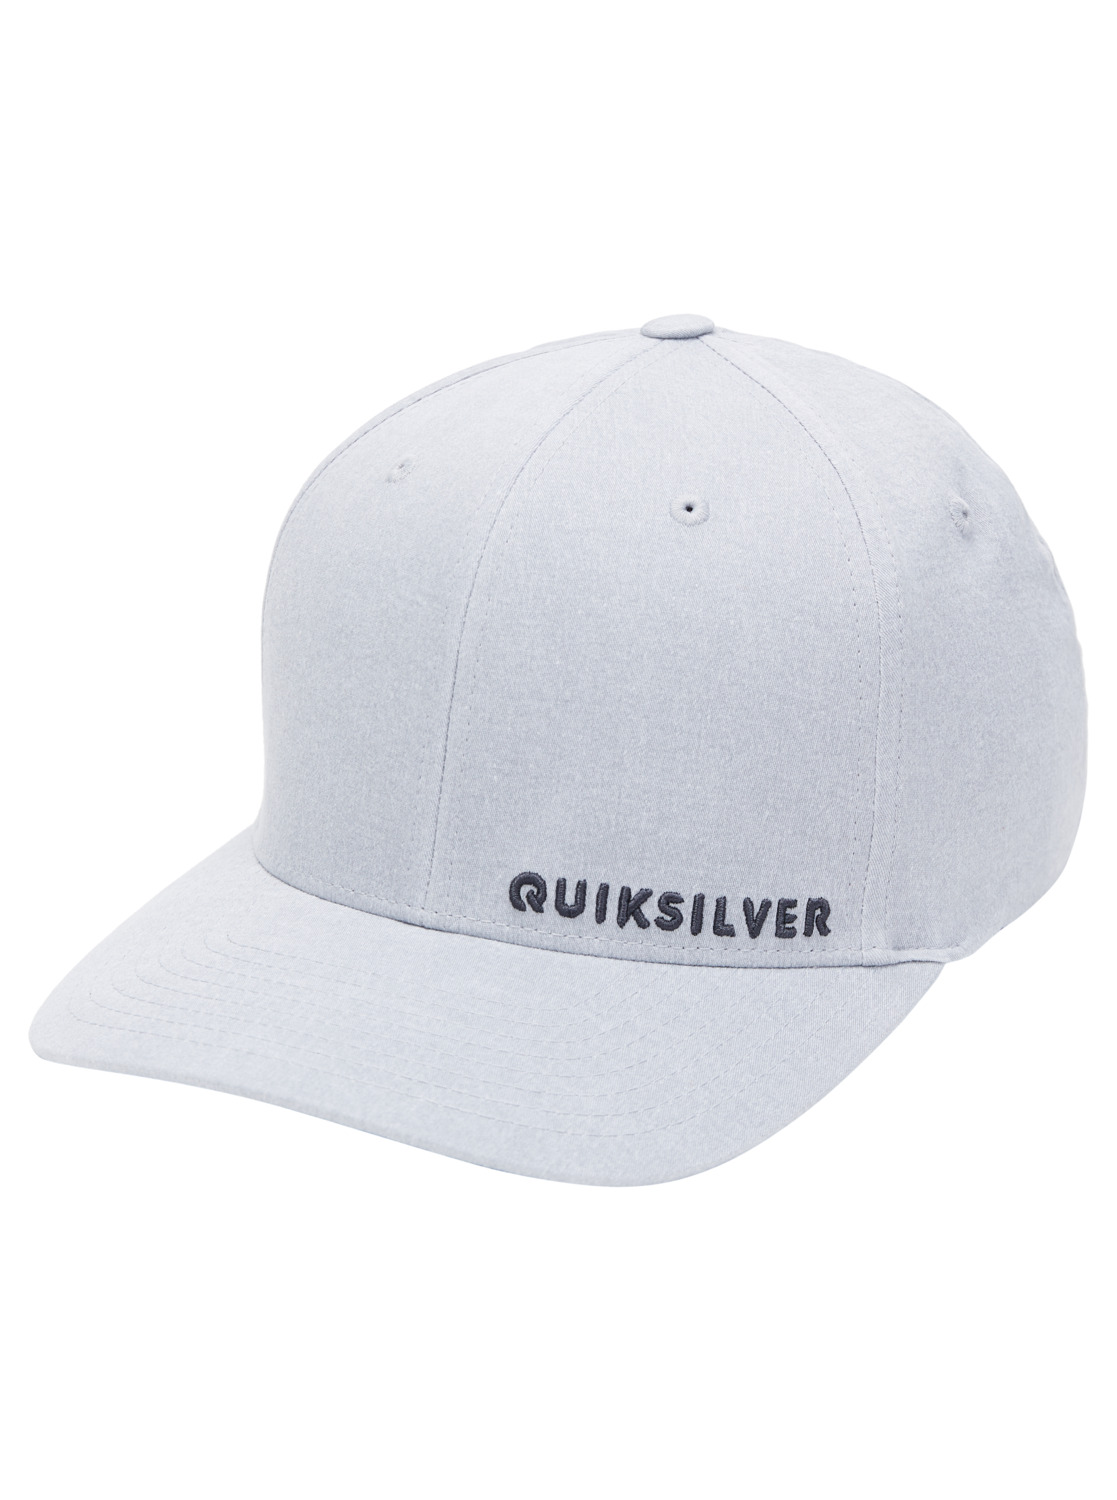 Quiksilver Flex Cap »Sidestay« von Quiksilver